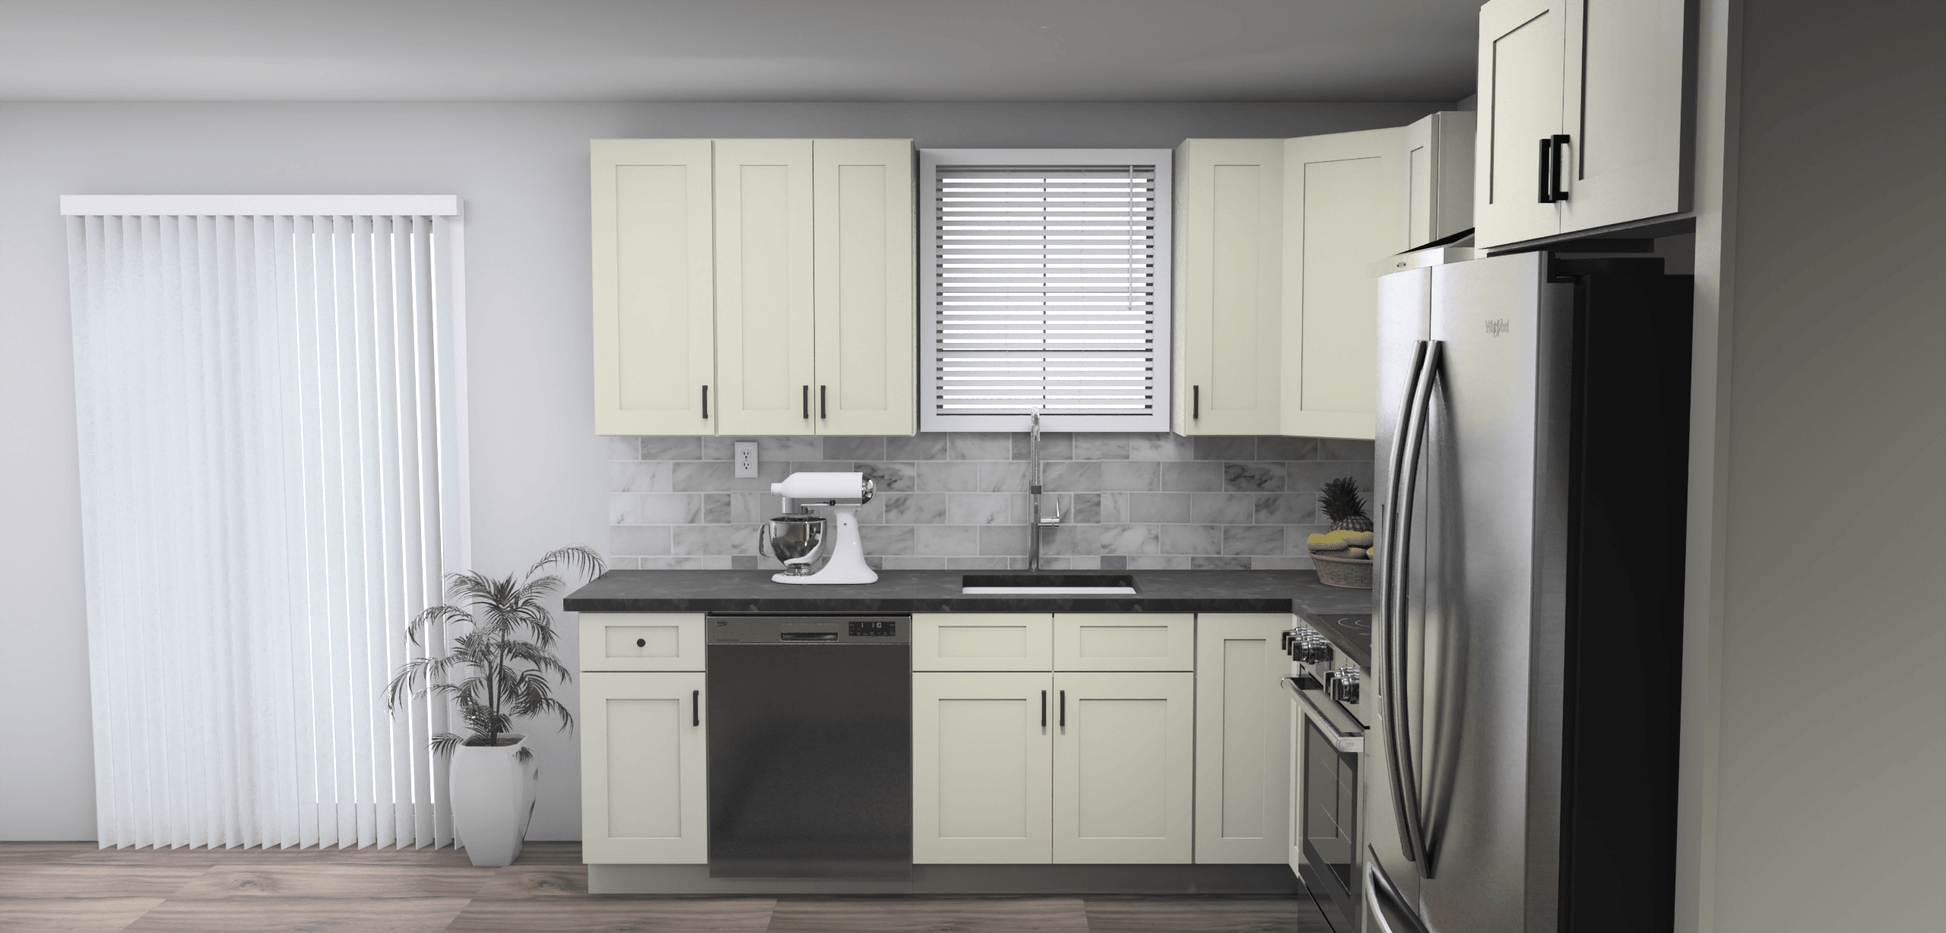 Fabuwood Allure Galaxy Linen 9 x 11 L Shaped Kitchen Side Layout Photo